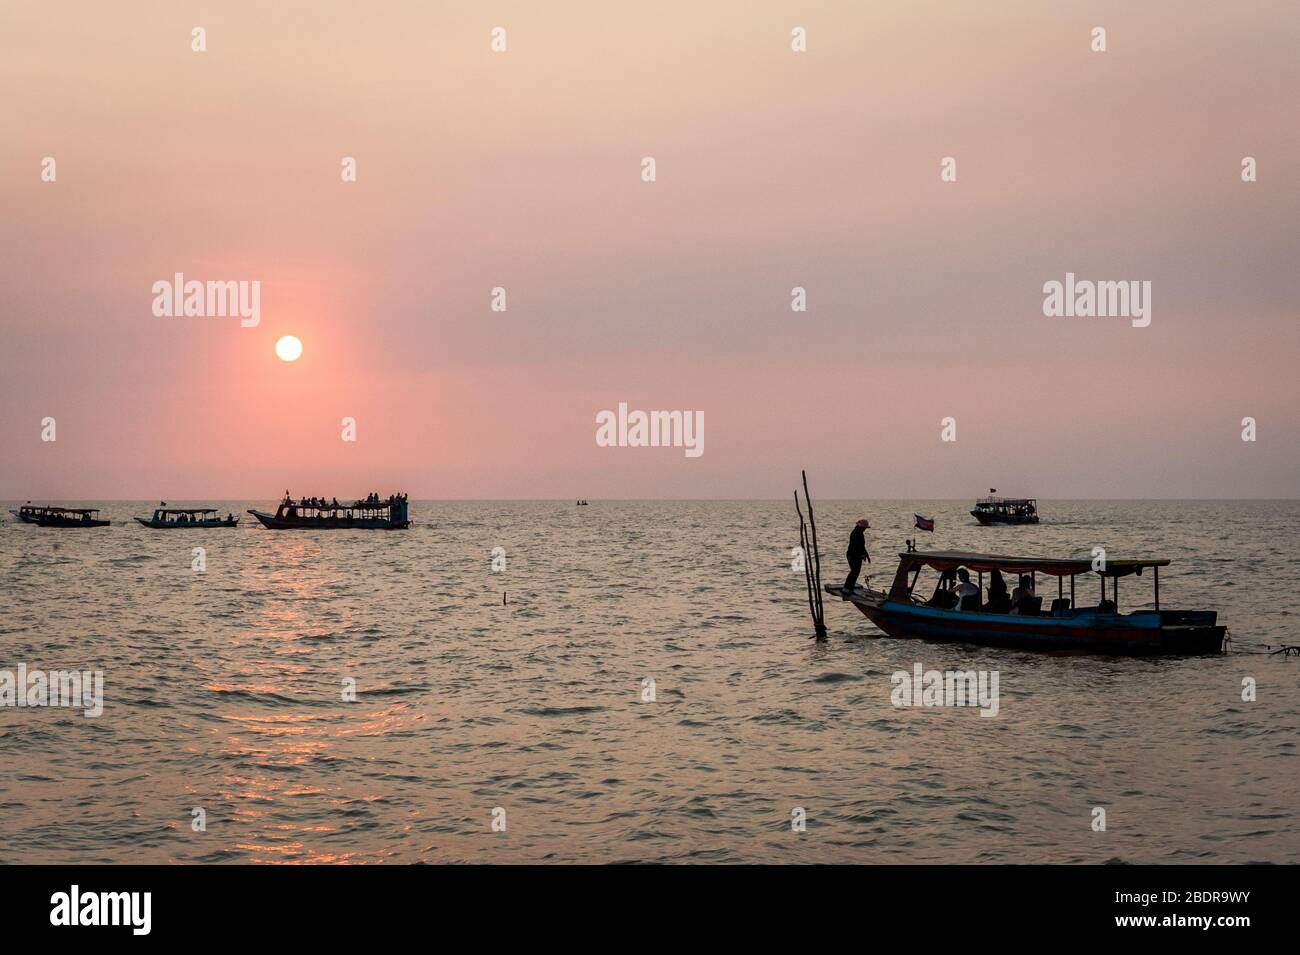 Sonnenuntergang am Tonle SAP See Kampong Phluk, Kambodscha. Fischerboote und Touristenboote, die man bei Sonnenuntergang sieht. Stockfoto